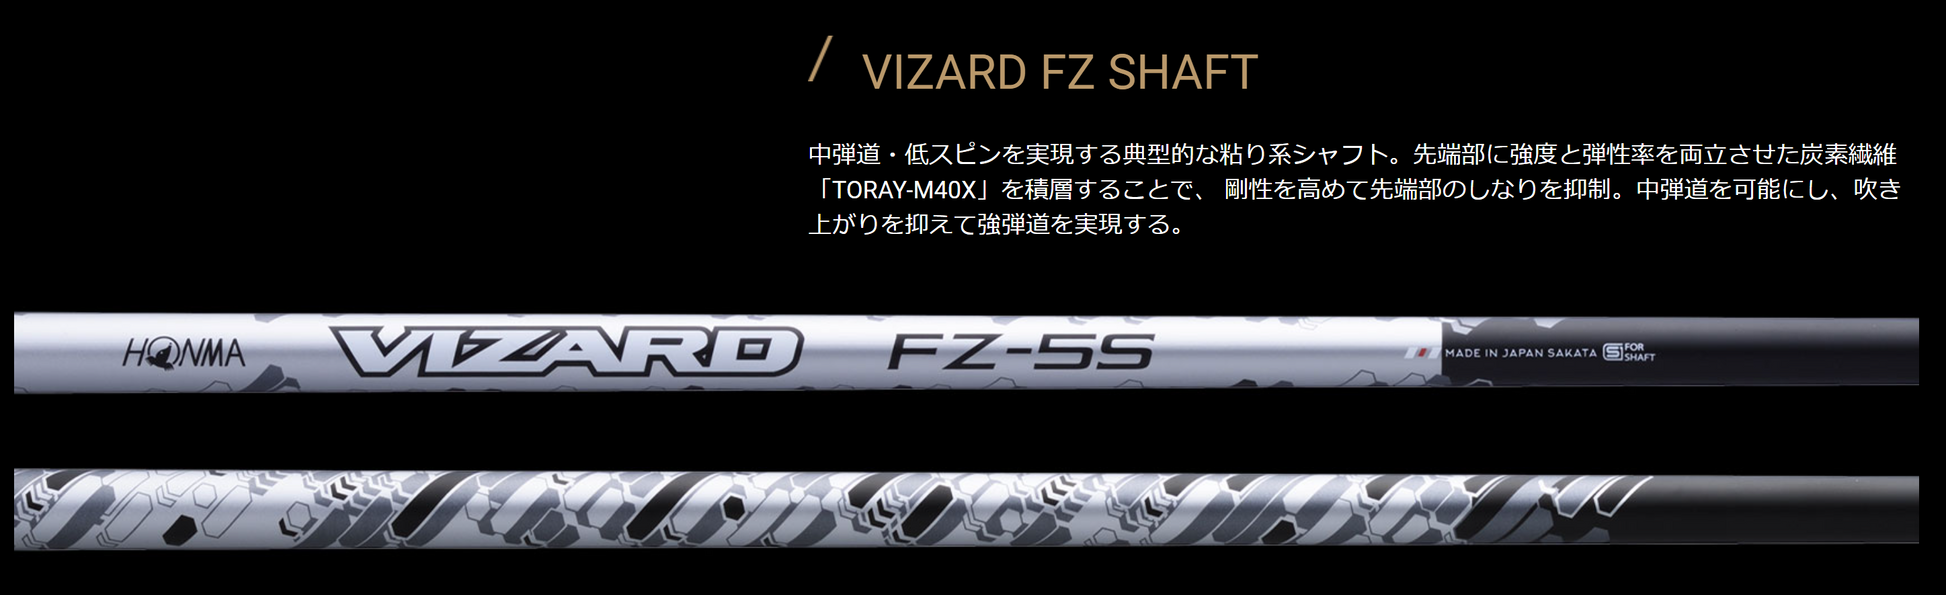 ホンマ T//WORLD GS PROTOTYPE II 9.5° ドライバー VIZARD FZ-5S